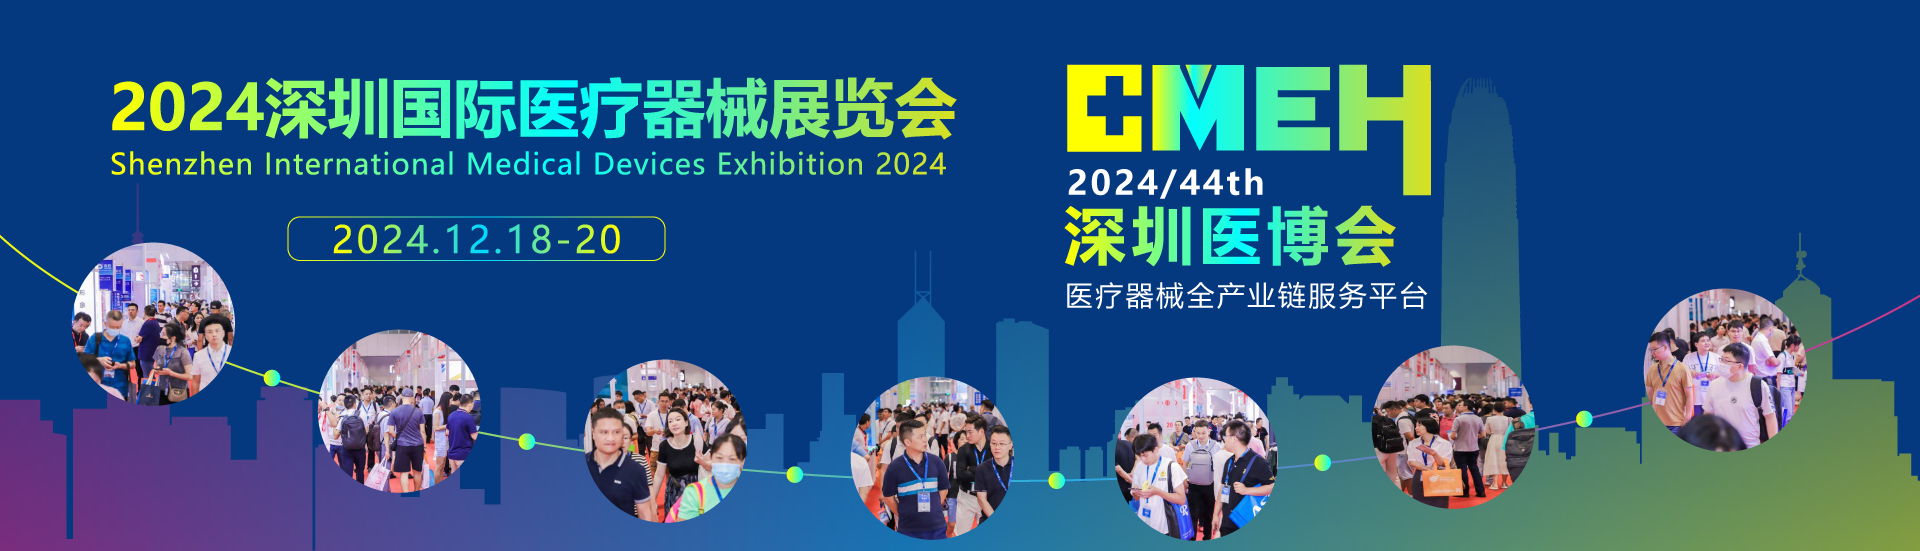 2024深圳国际医疗器械展览会- 参展报名提前申请有优惠